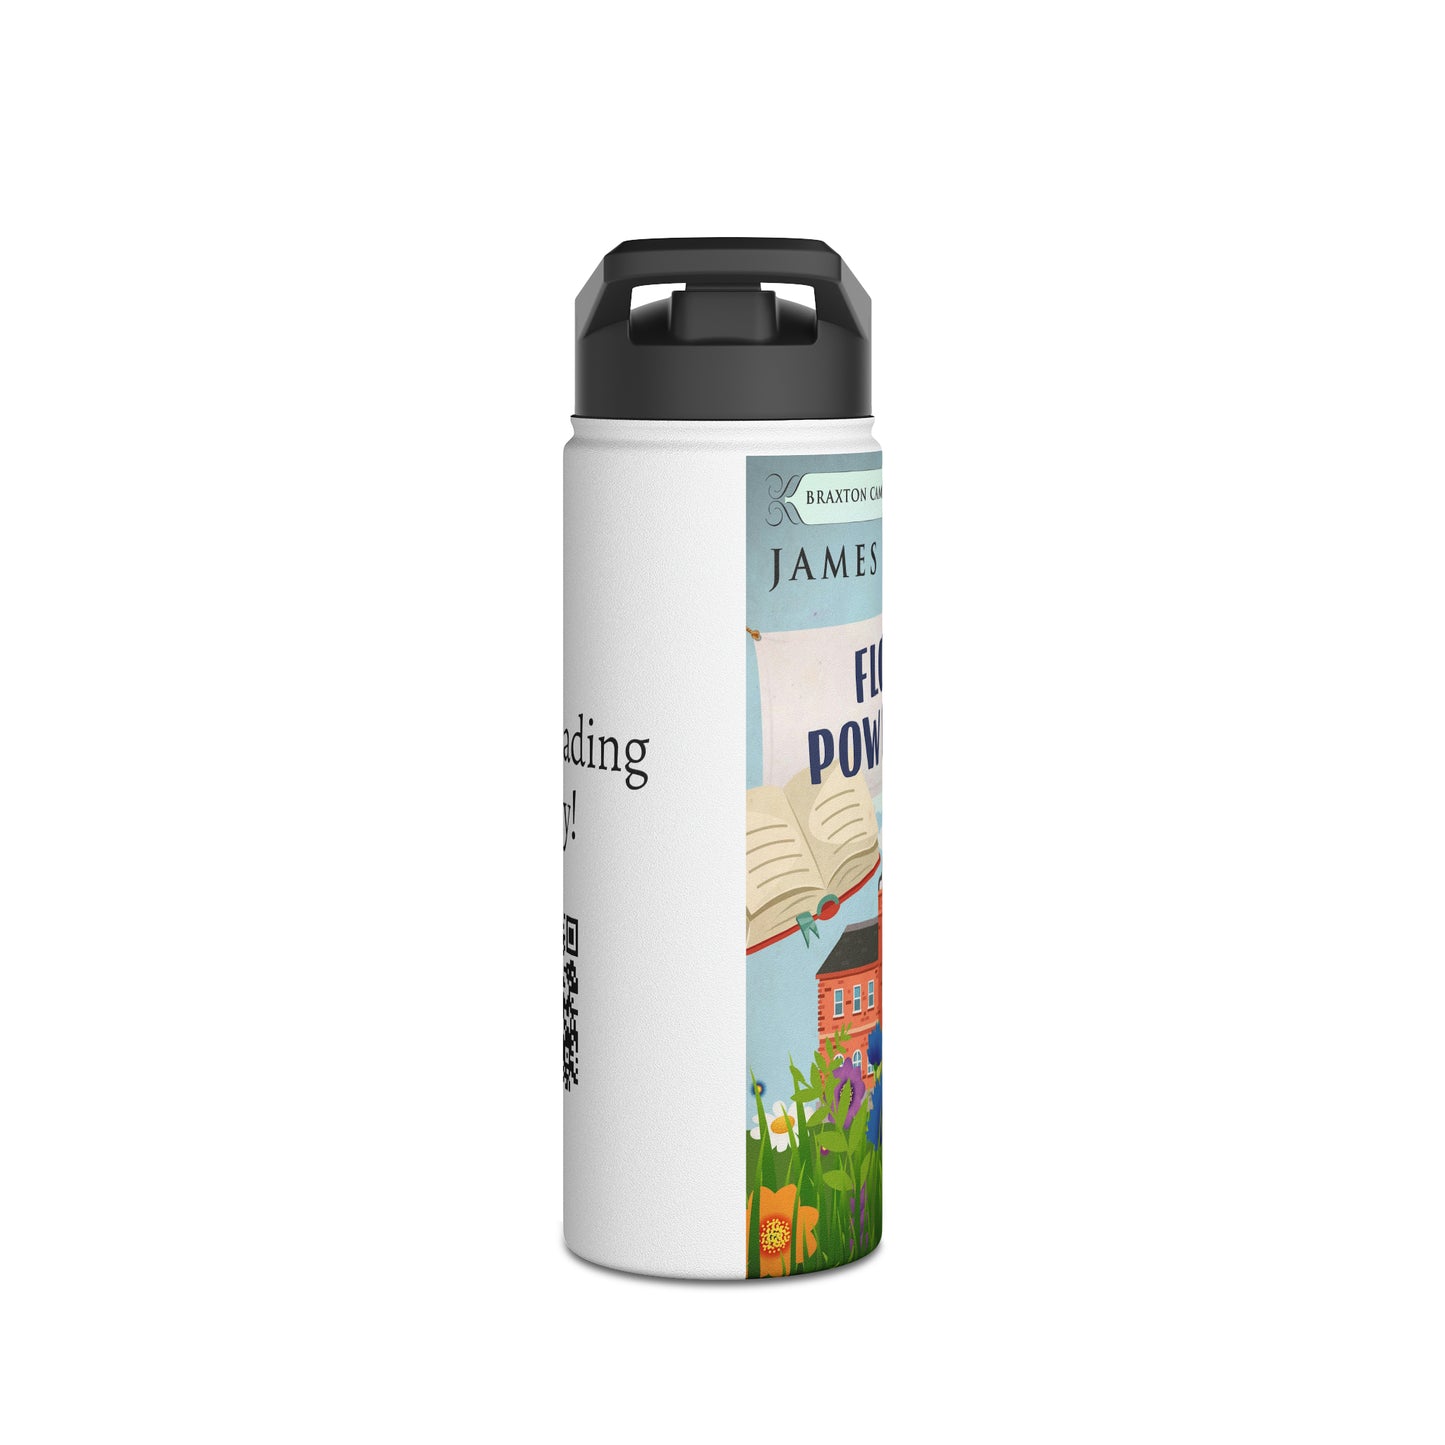 Flower Power Trip - Stainless Steel Water Bottle